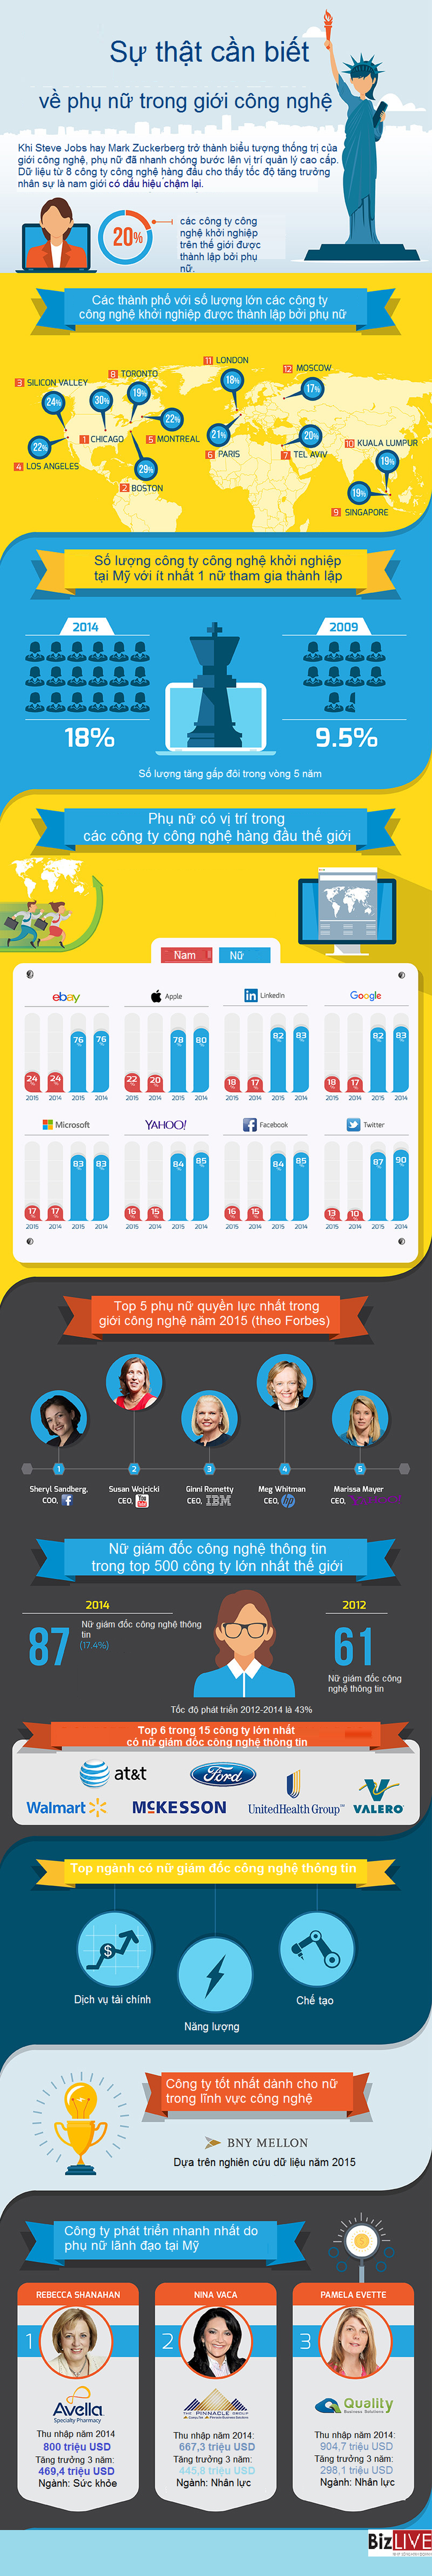 [Infographic] Những sự thật về phụ nữ trong các công ty công nghệ - Ảnh 1.